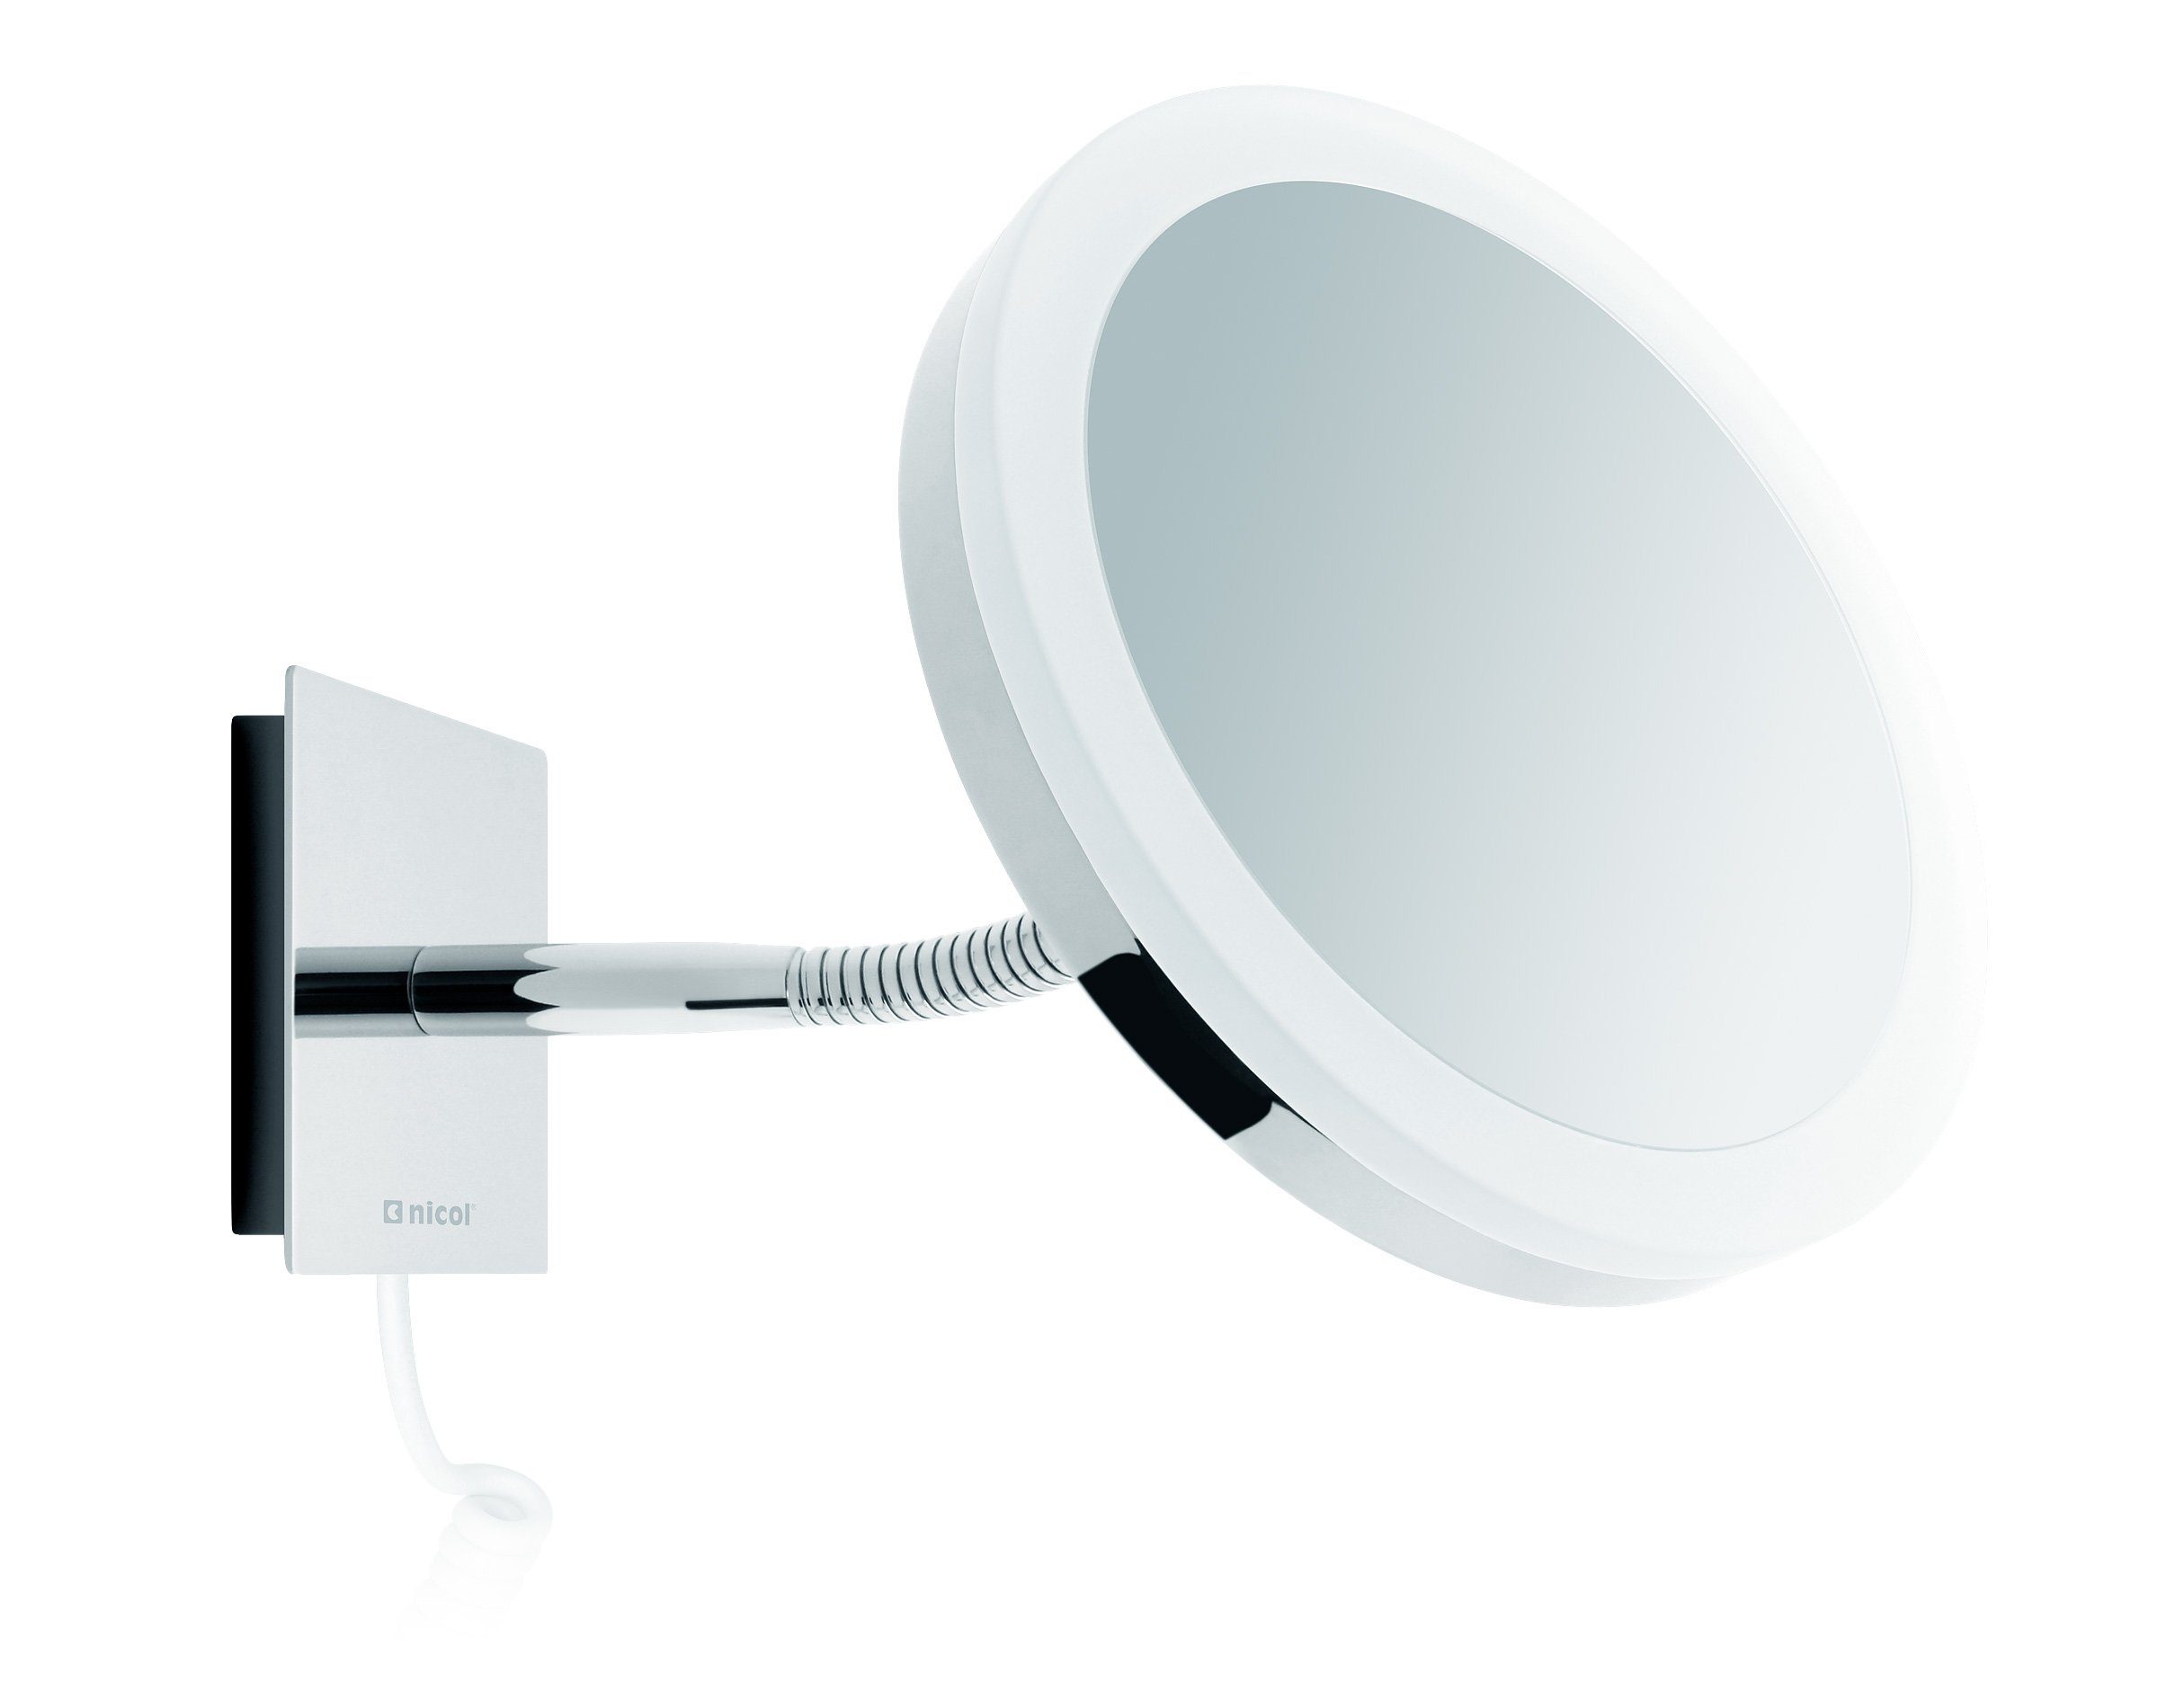 LED-Tageslichtbeleuchtung, Kosmetikspiegel mit Kosmetikspiegel Sara, Schwanenhals Vergrößerung, 5-fach Nicol